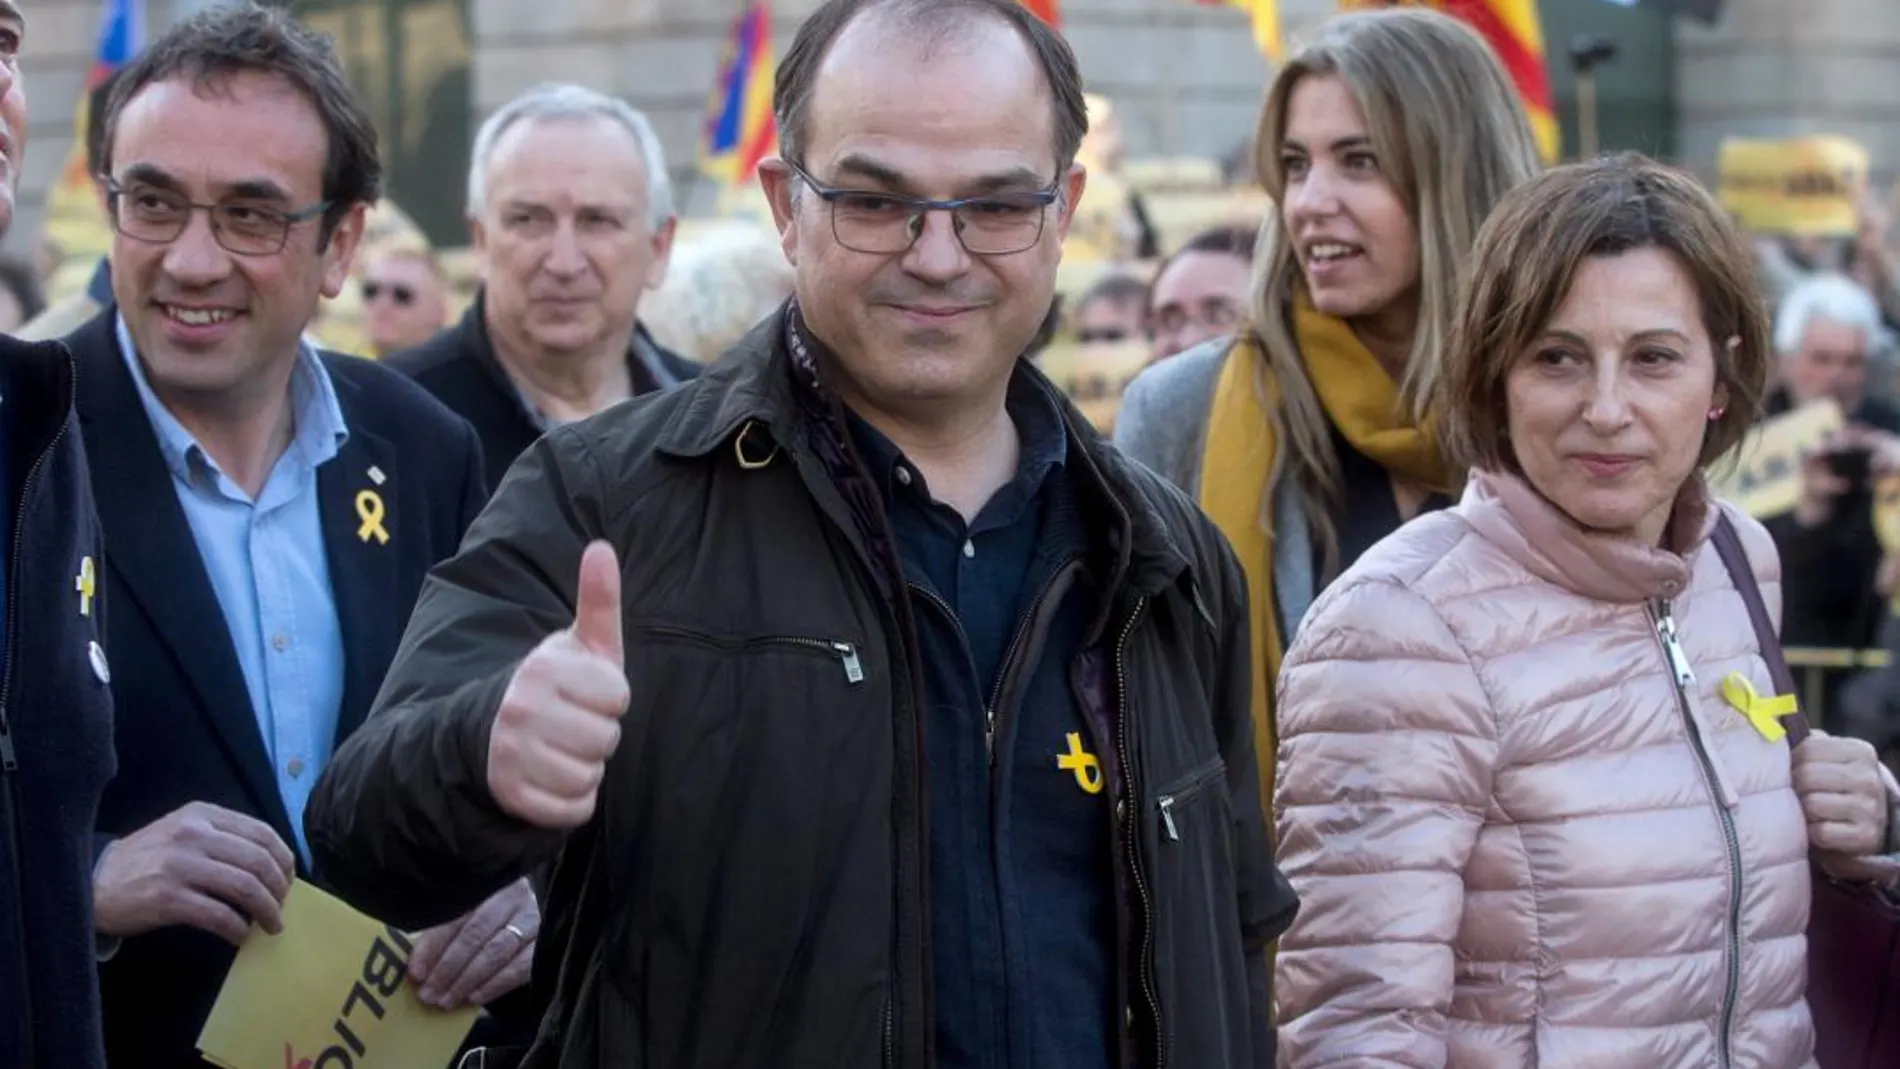 El diputado de JxCat Jordi Turull (c) y la expresidenta del Parlamento de Cataluña Carme Forcadell (d) asisten a una manifestación